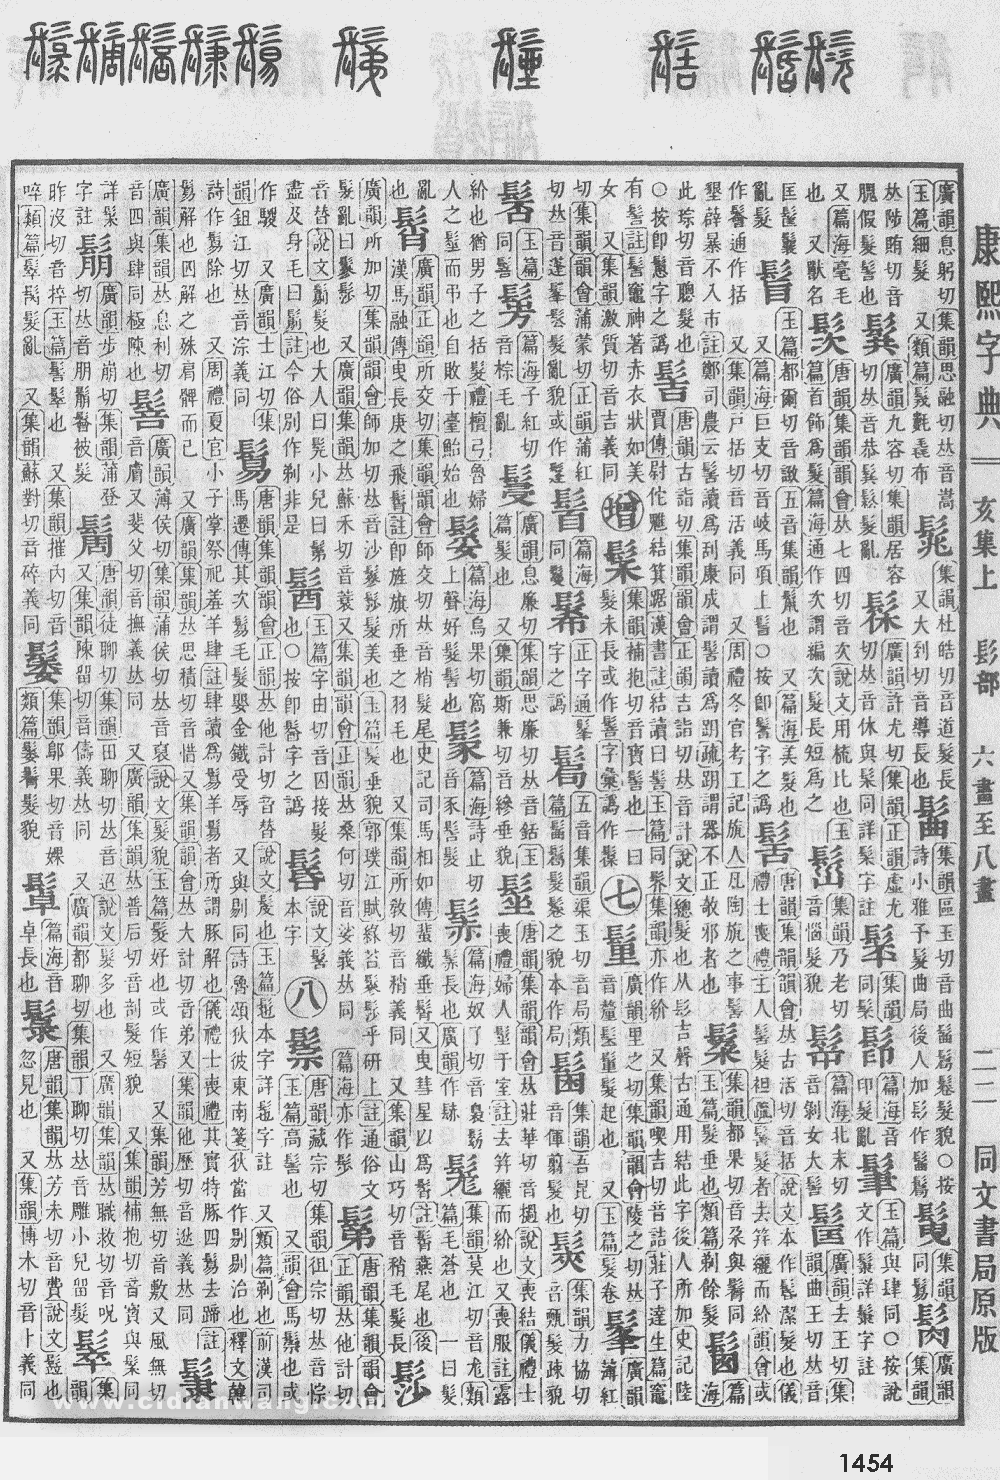 康熙字典掃描版第1454頁